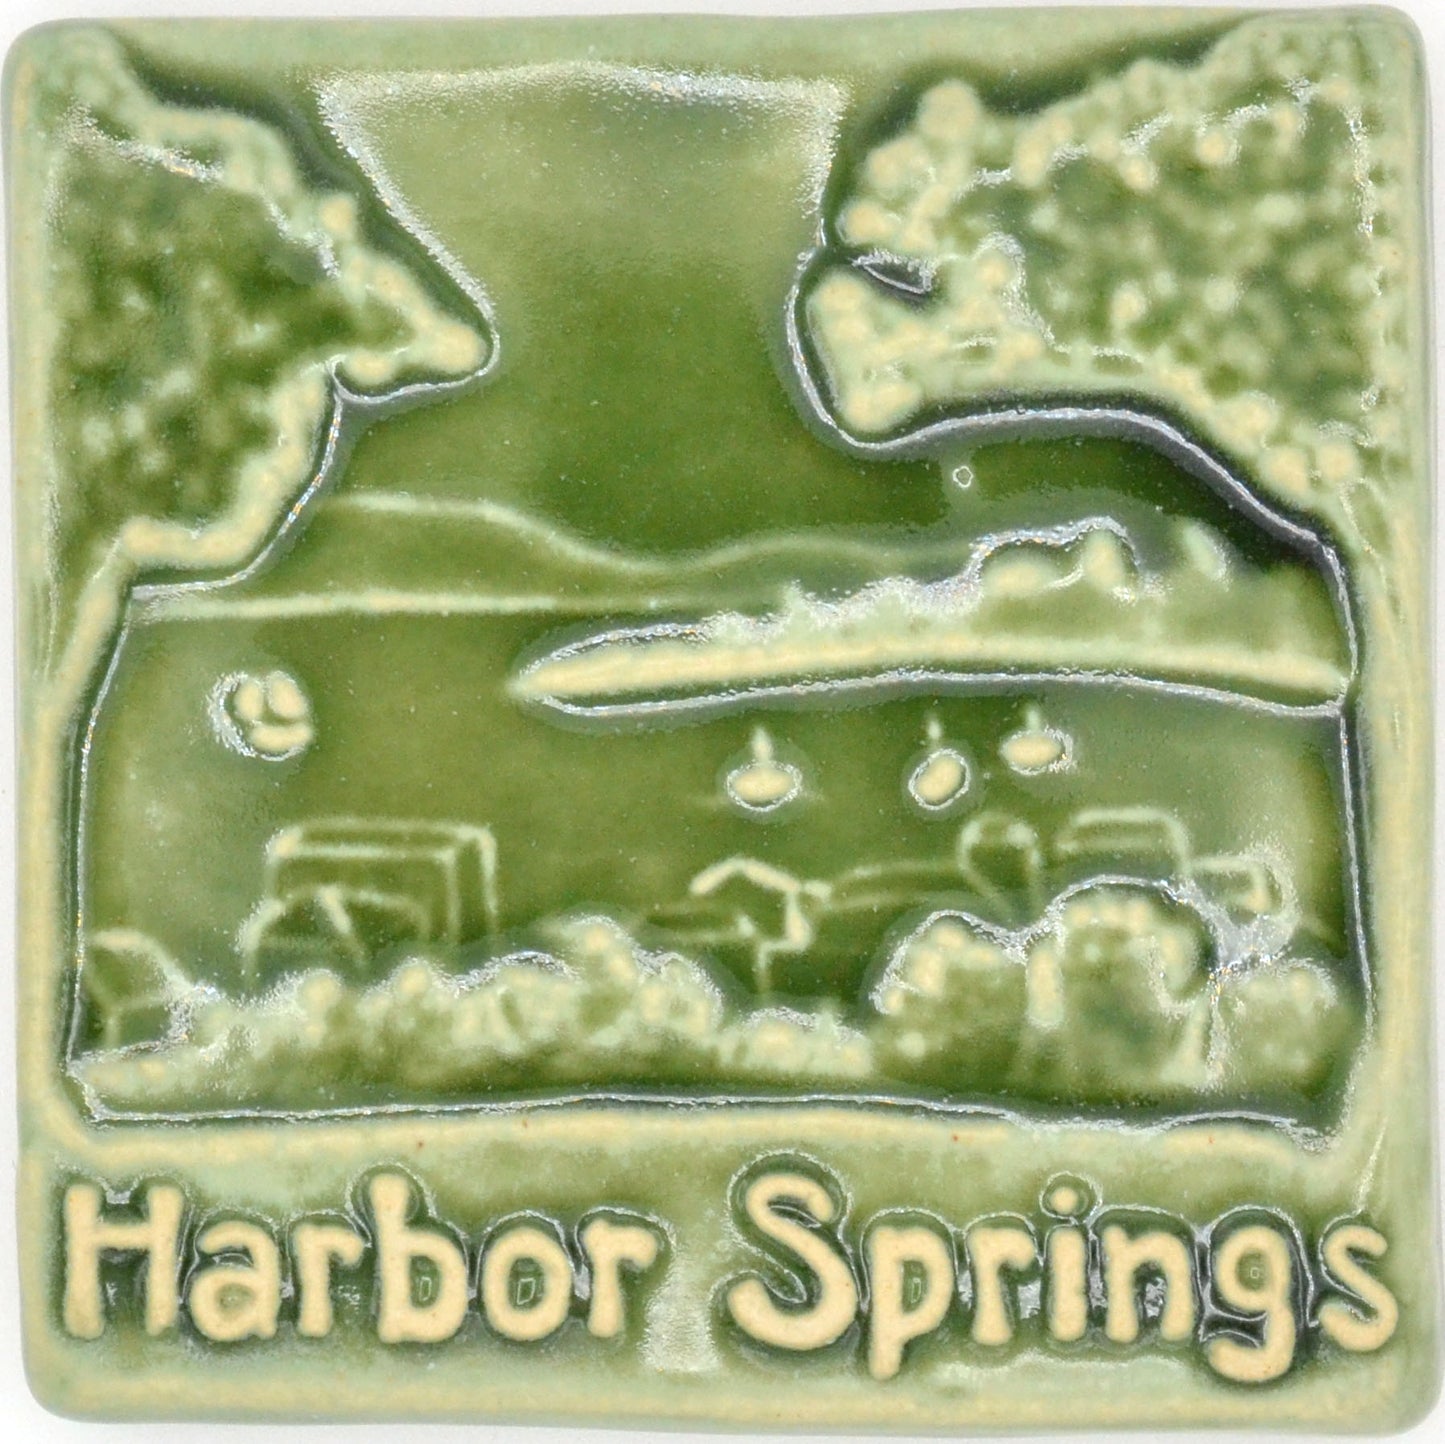 4x4 harbor springs tile green